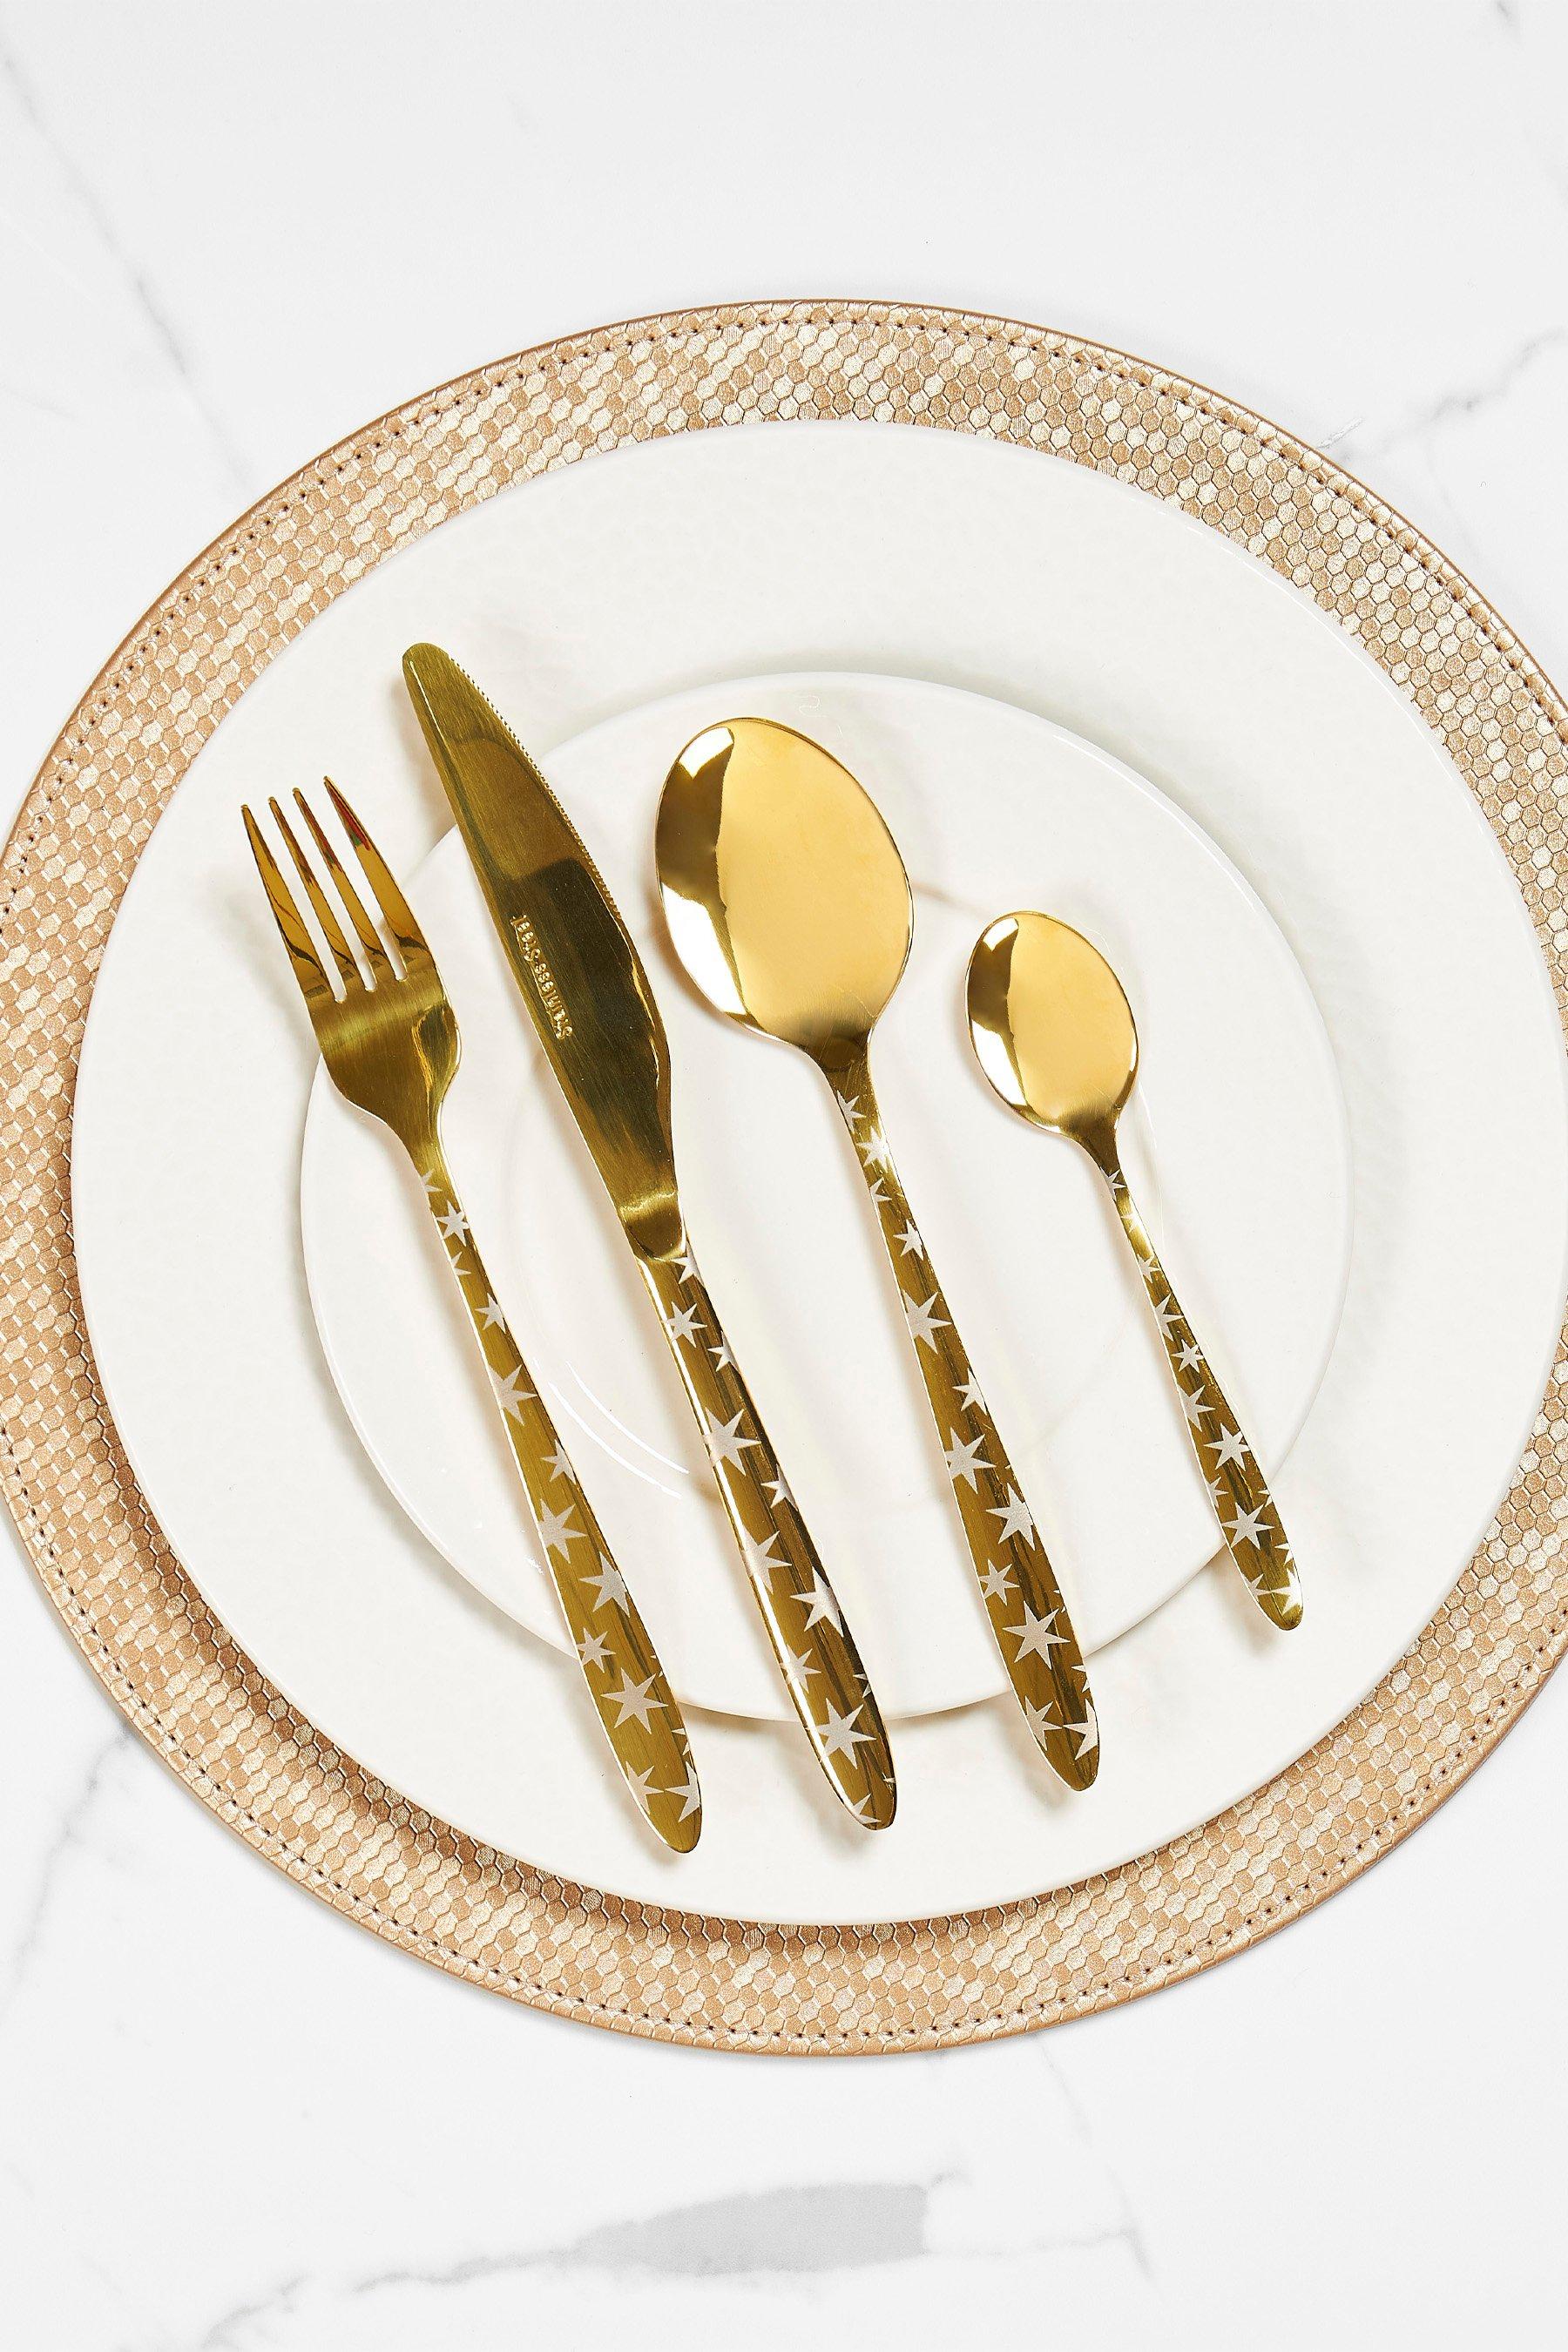 16 piece sabichi stars cutlery set - gold - stainless steel